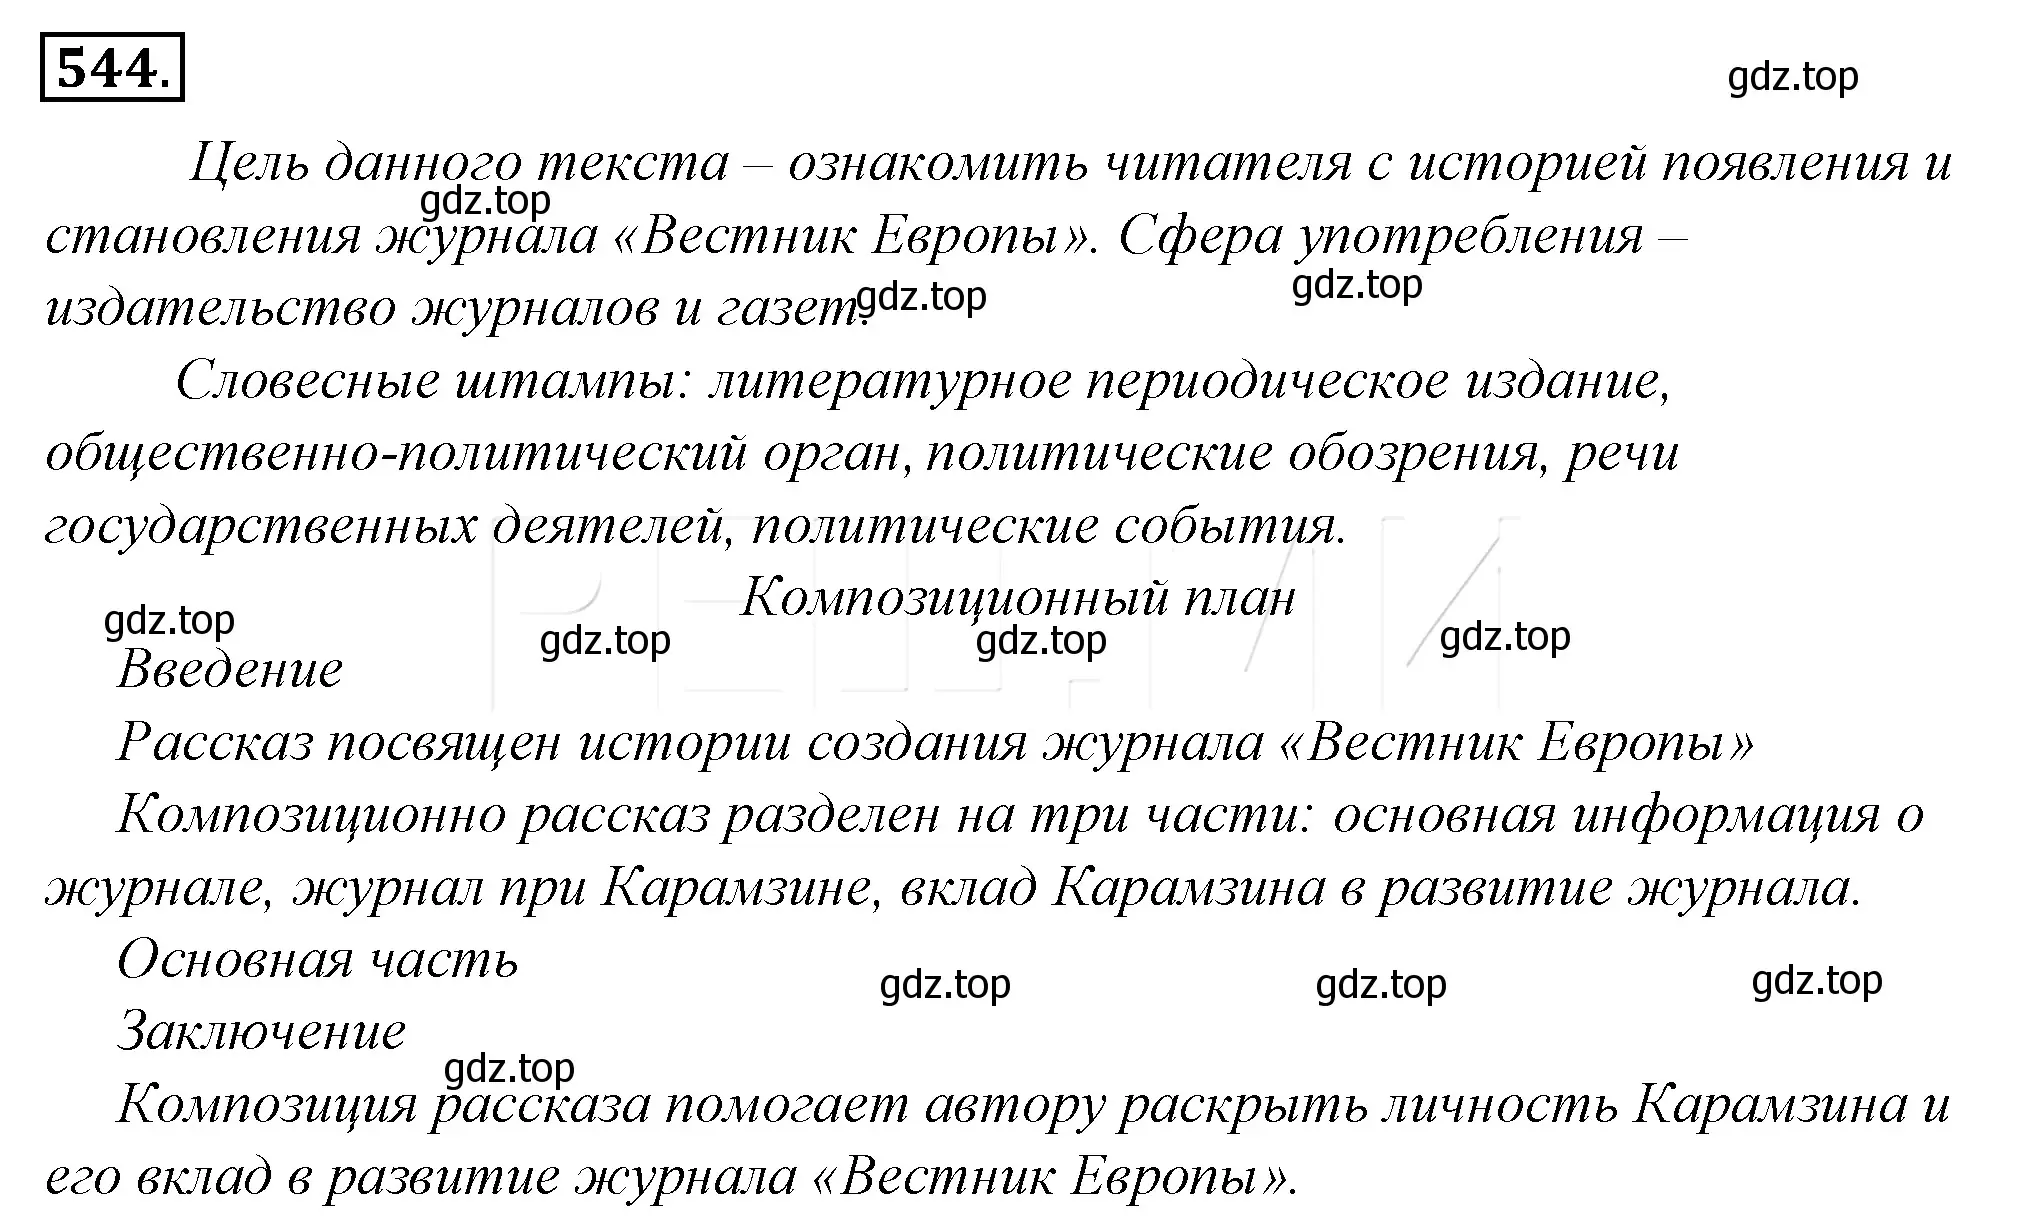 Решение 4. номер 220 (страница 303) гдз по русскому языку 10-11 класс Гольцова, Шамшин, учебник 2 часть